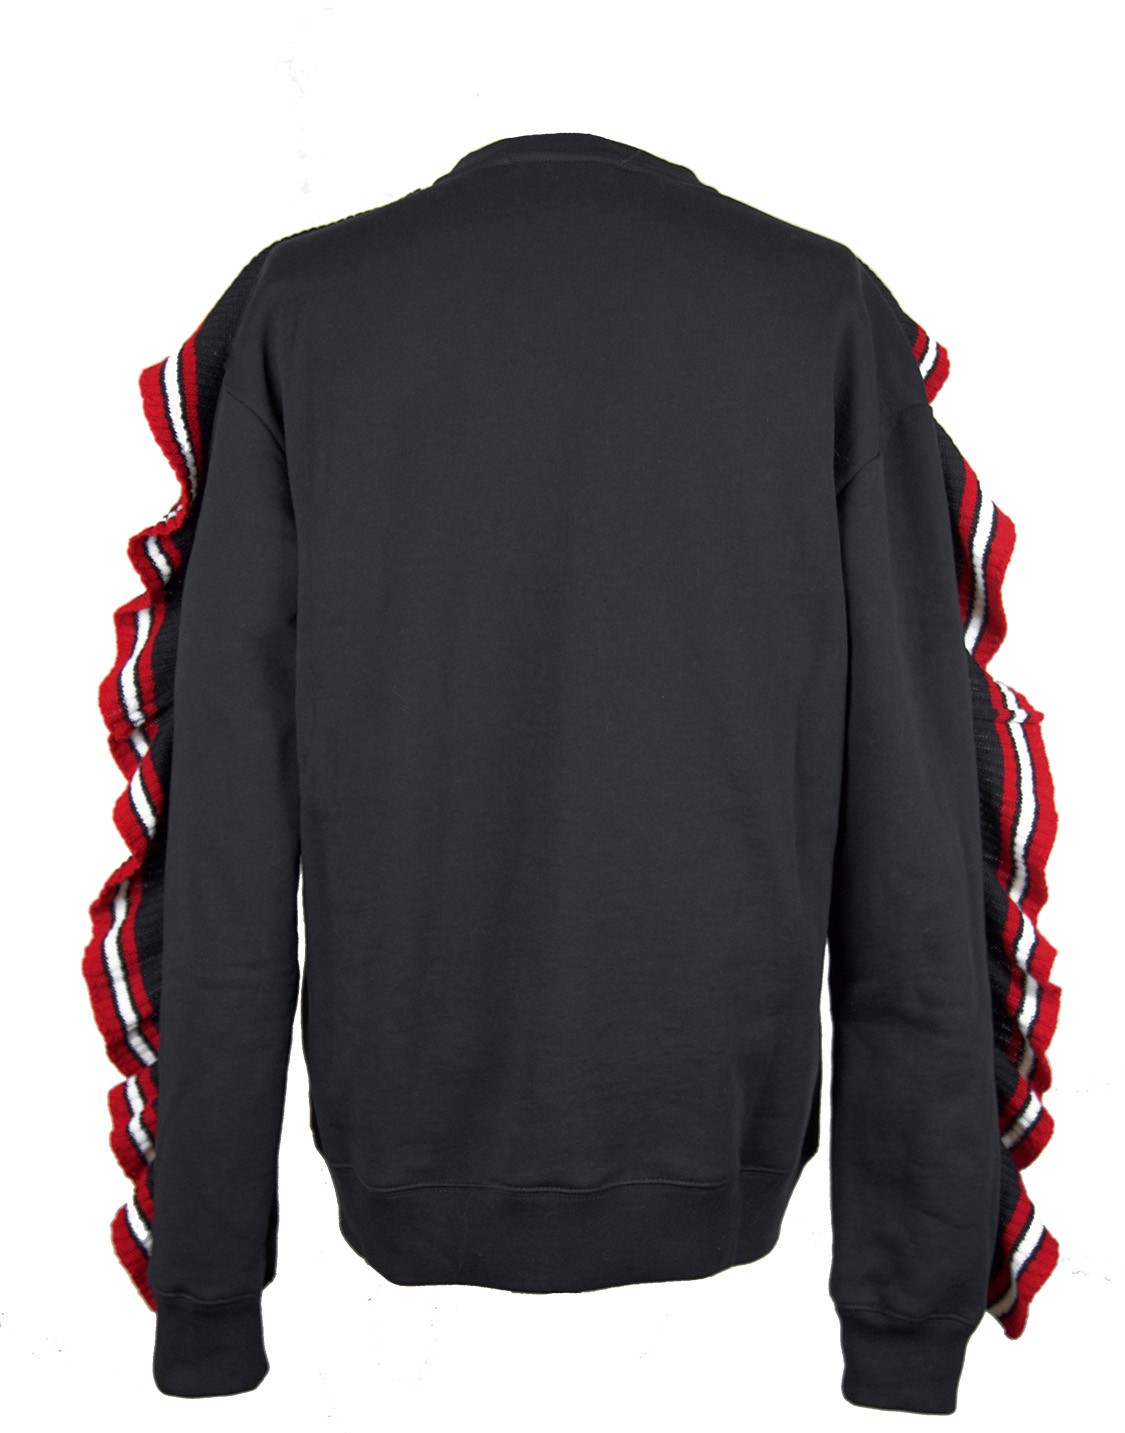 shop MSGM Sales Felpe: Felpa MSGM, nera, girocollo, manica lunga, rouches rosse e bianche in maglia, logo in maglia sul davanti.

Composizione: 100% cotone. number 1026